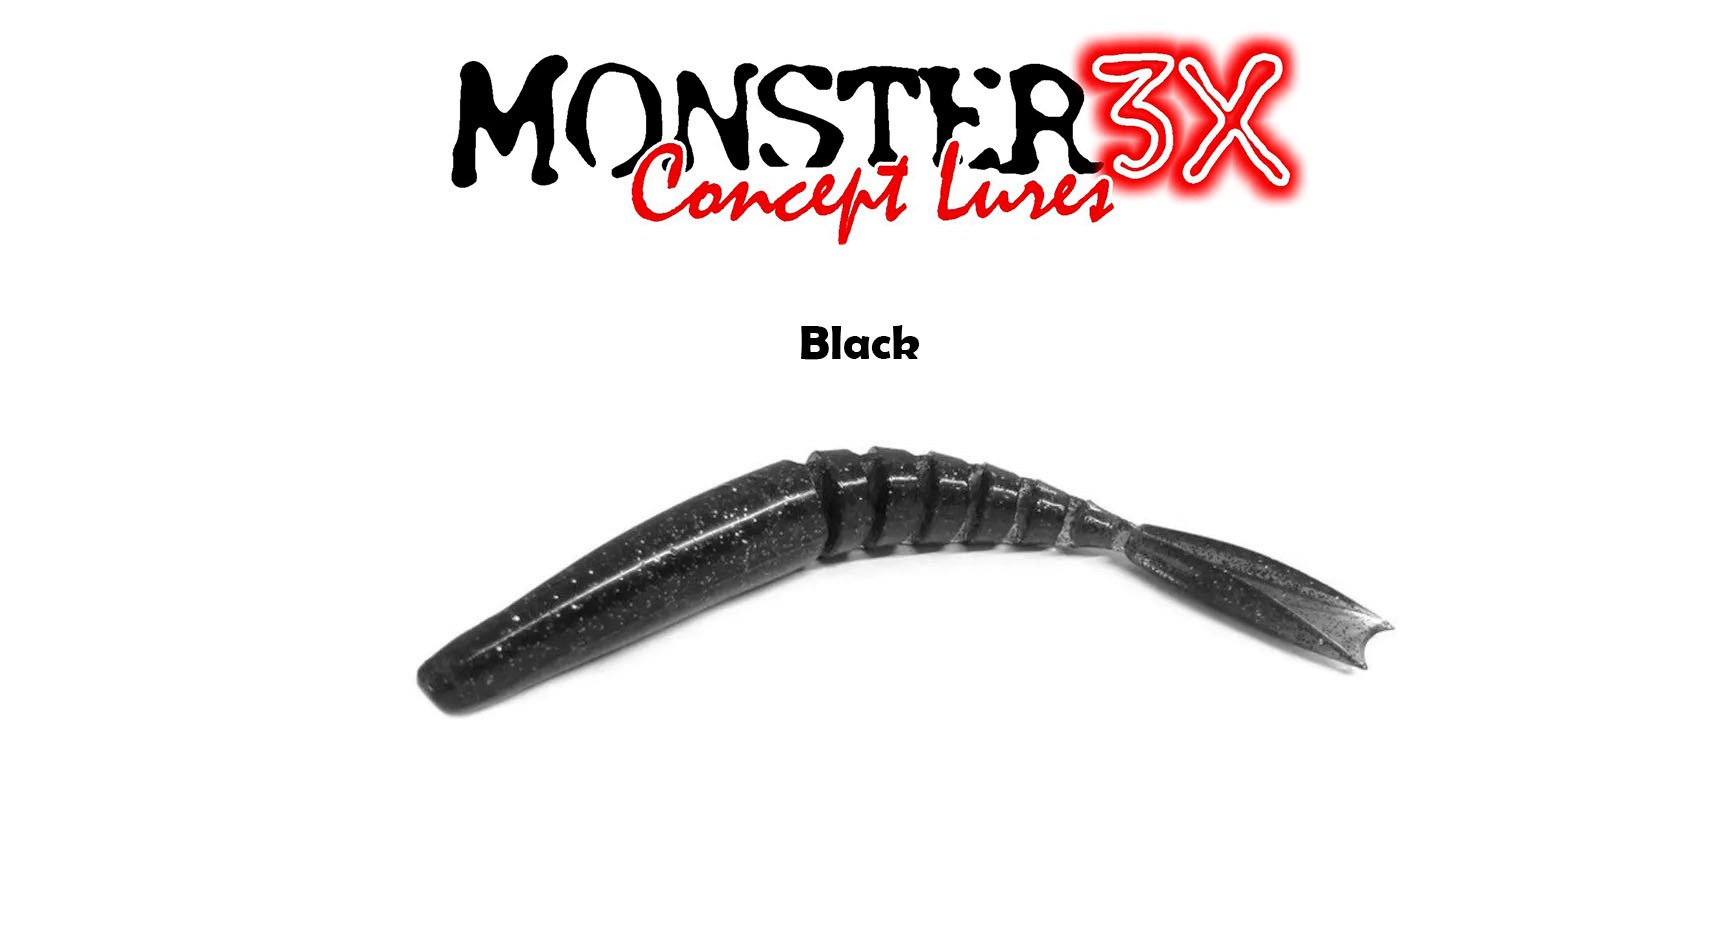 Isca Artificial Soft Monster 3X X-Swim (12 cm) 3 Peças - Várias Cores